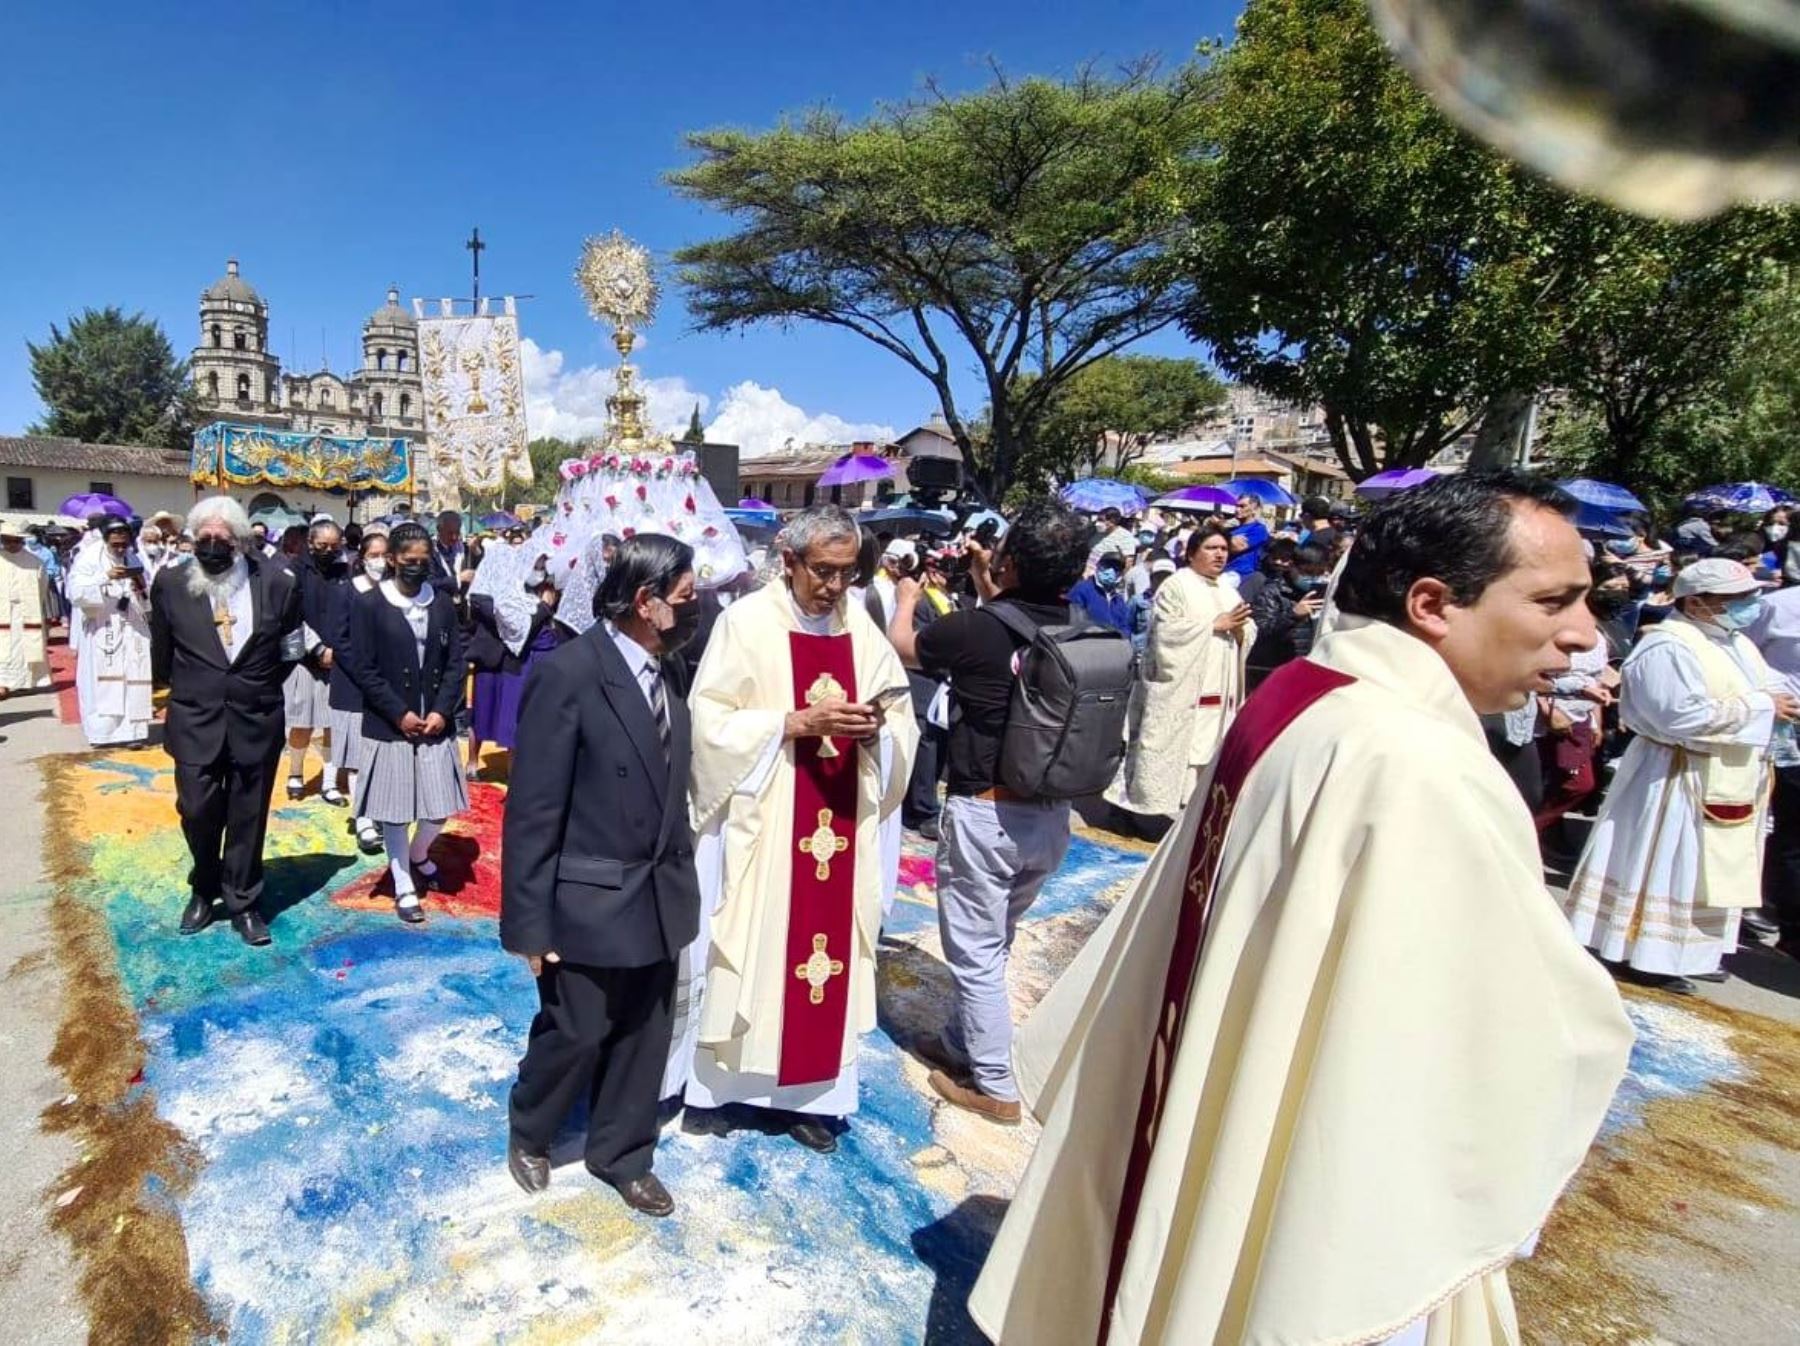 Con misa y procesión de la Eucaristía sobre 68 alfombras multicolores, Cajamarca celebra hoy la festividad del Corpus Christi. Foto: Eduard Lozano